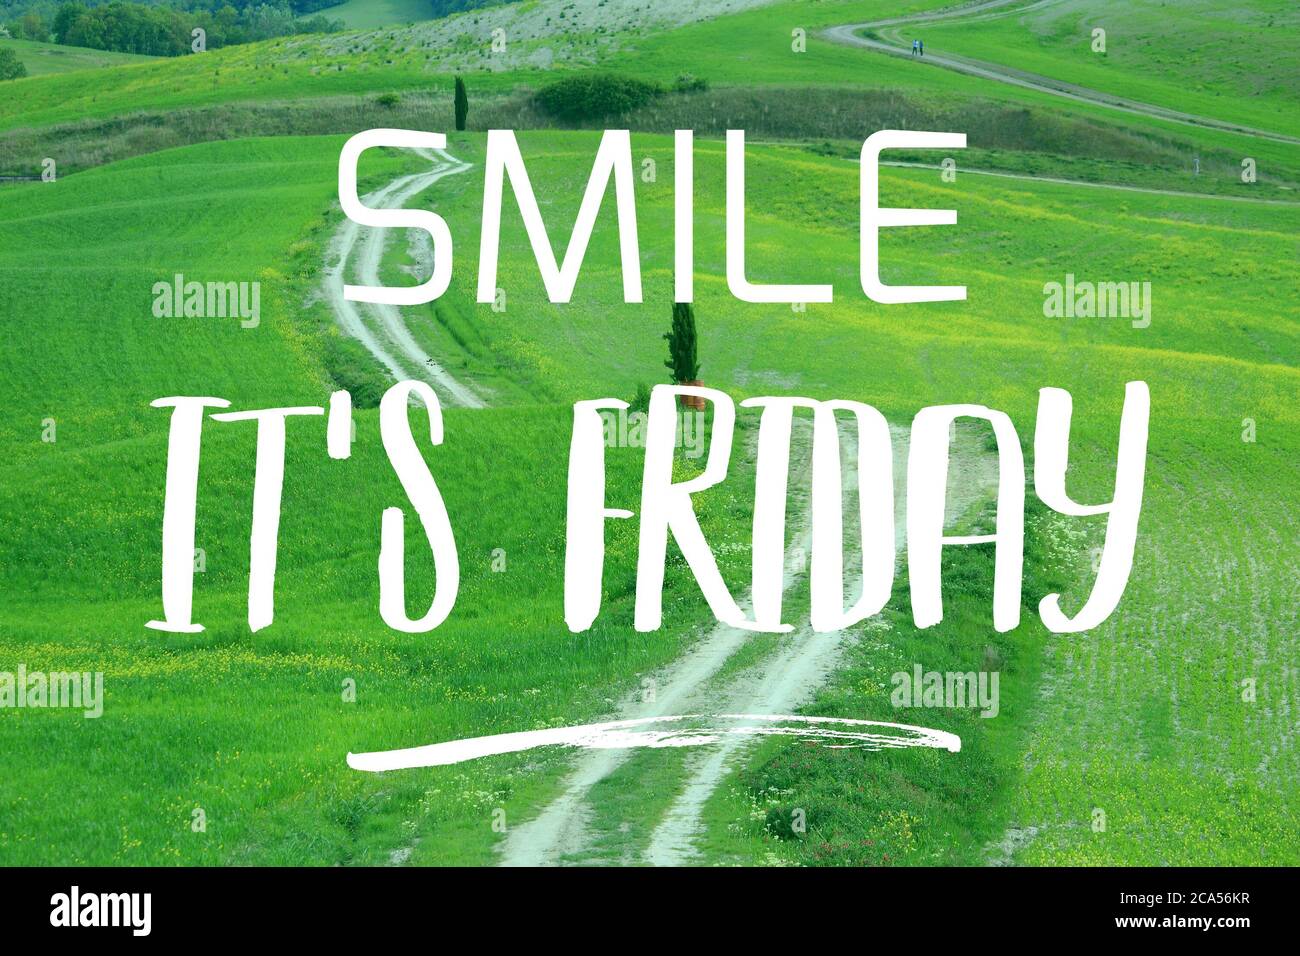 Smile it's Friday - social media motivational banner. Stock Photo